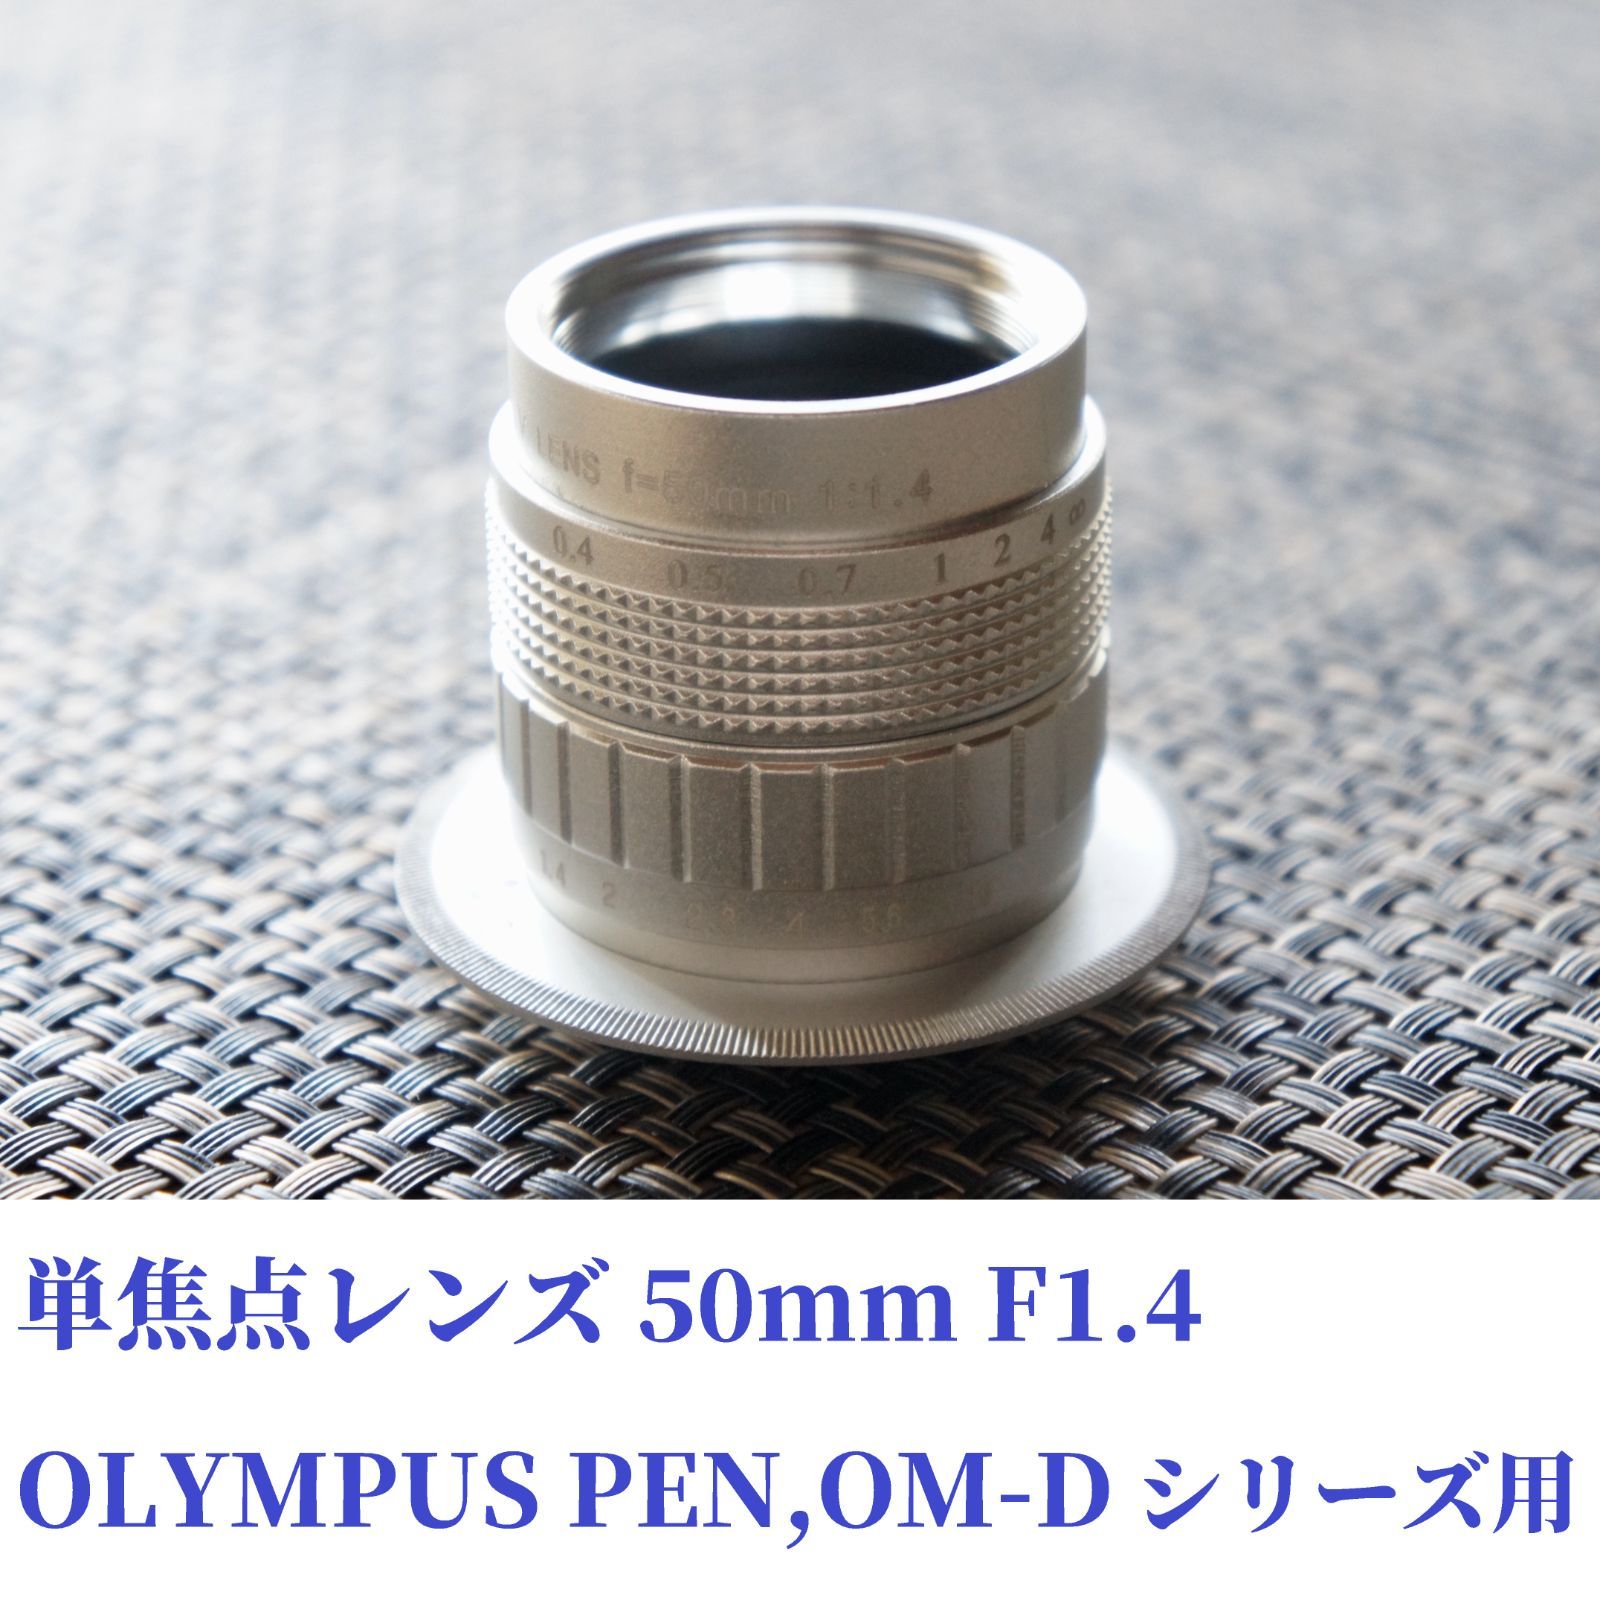 単焦点レンズ 50mmF1.4 マイクロフォーサーズマウント用